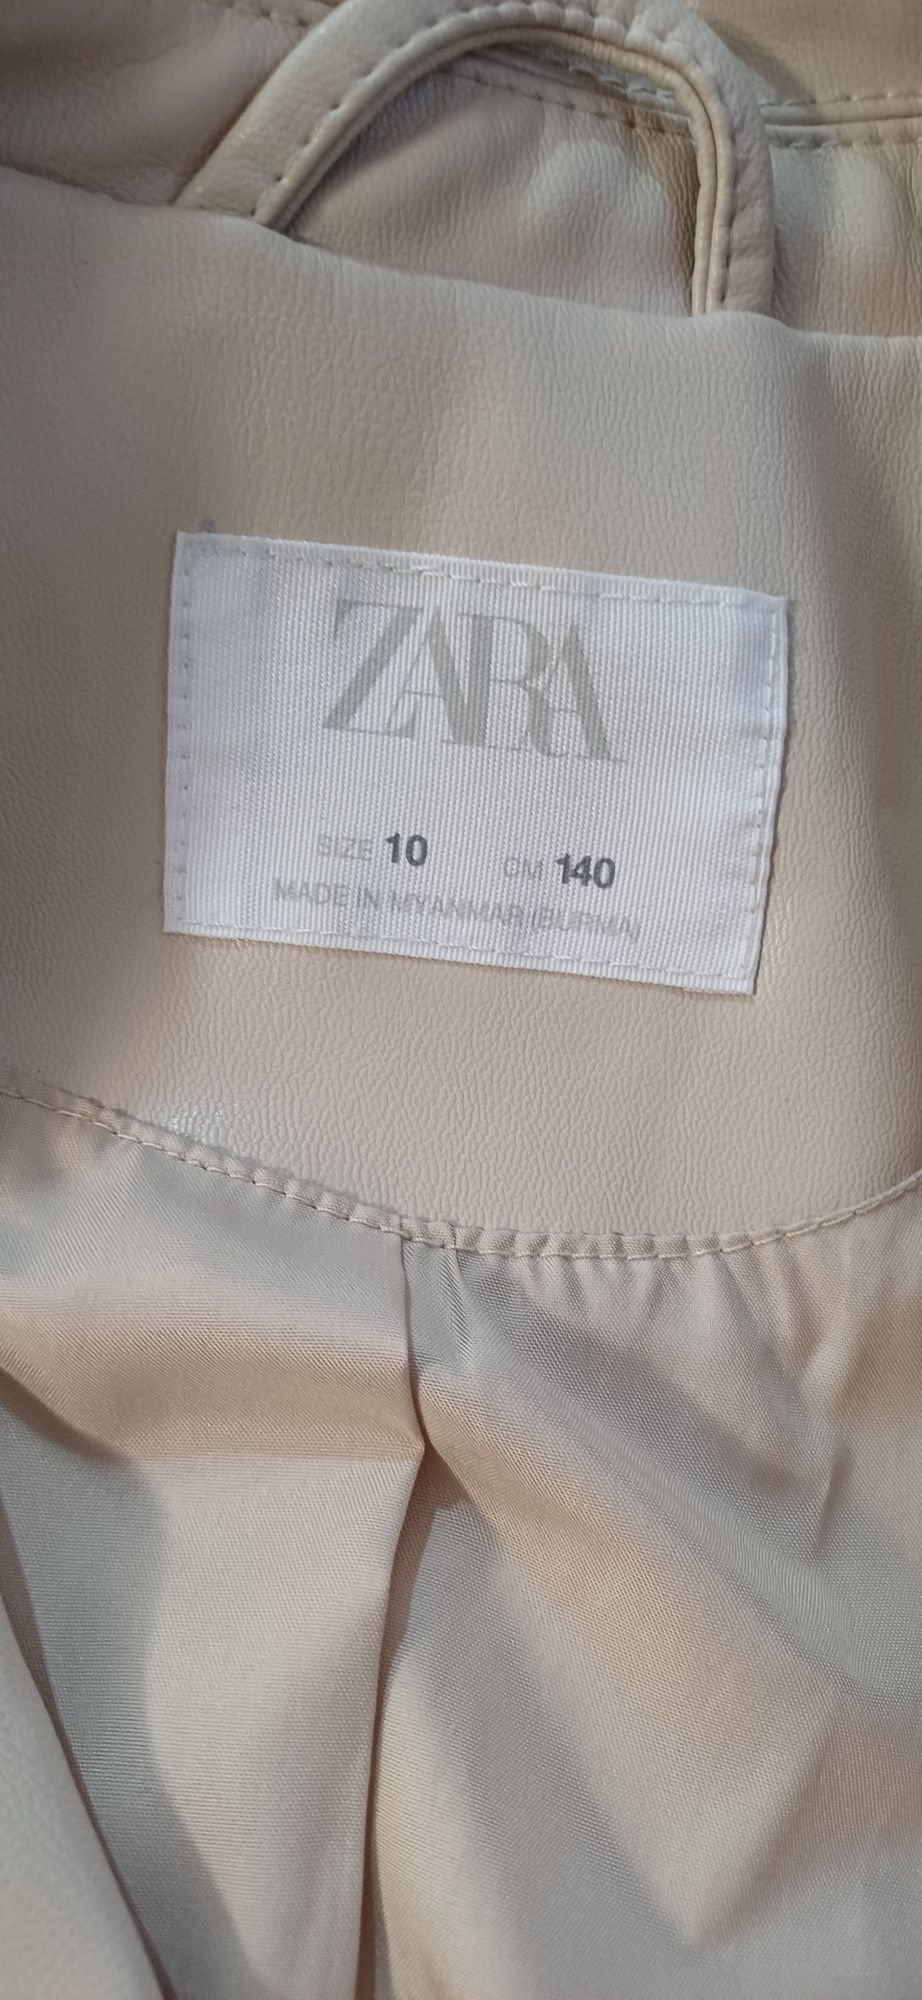 Кожаная куртка Zara